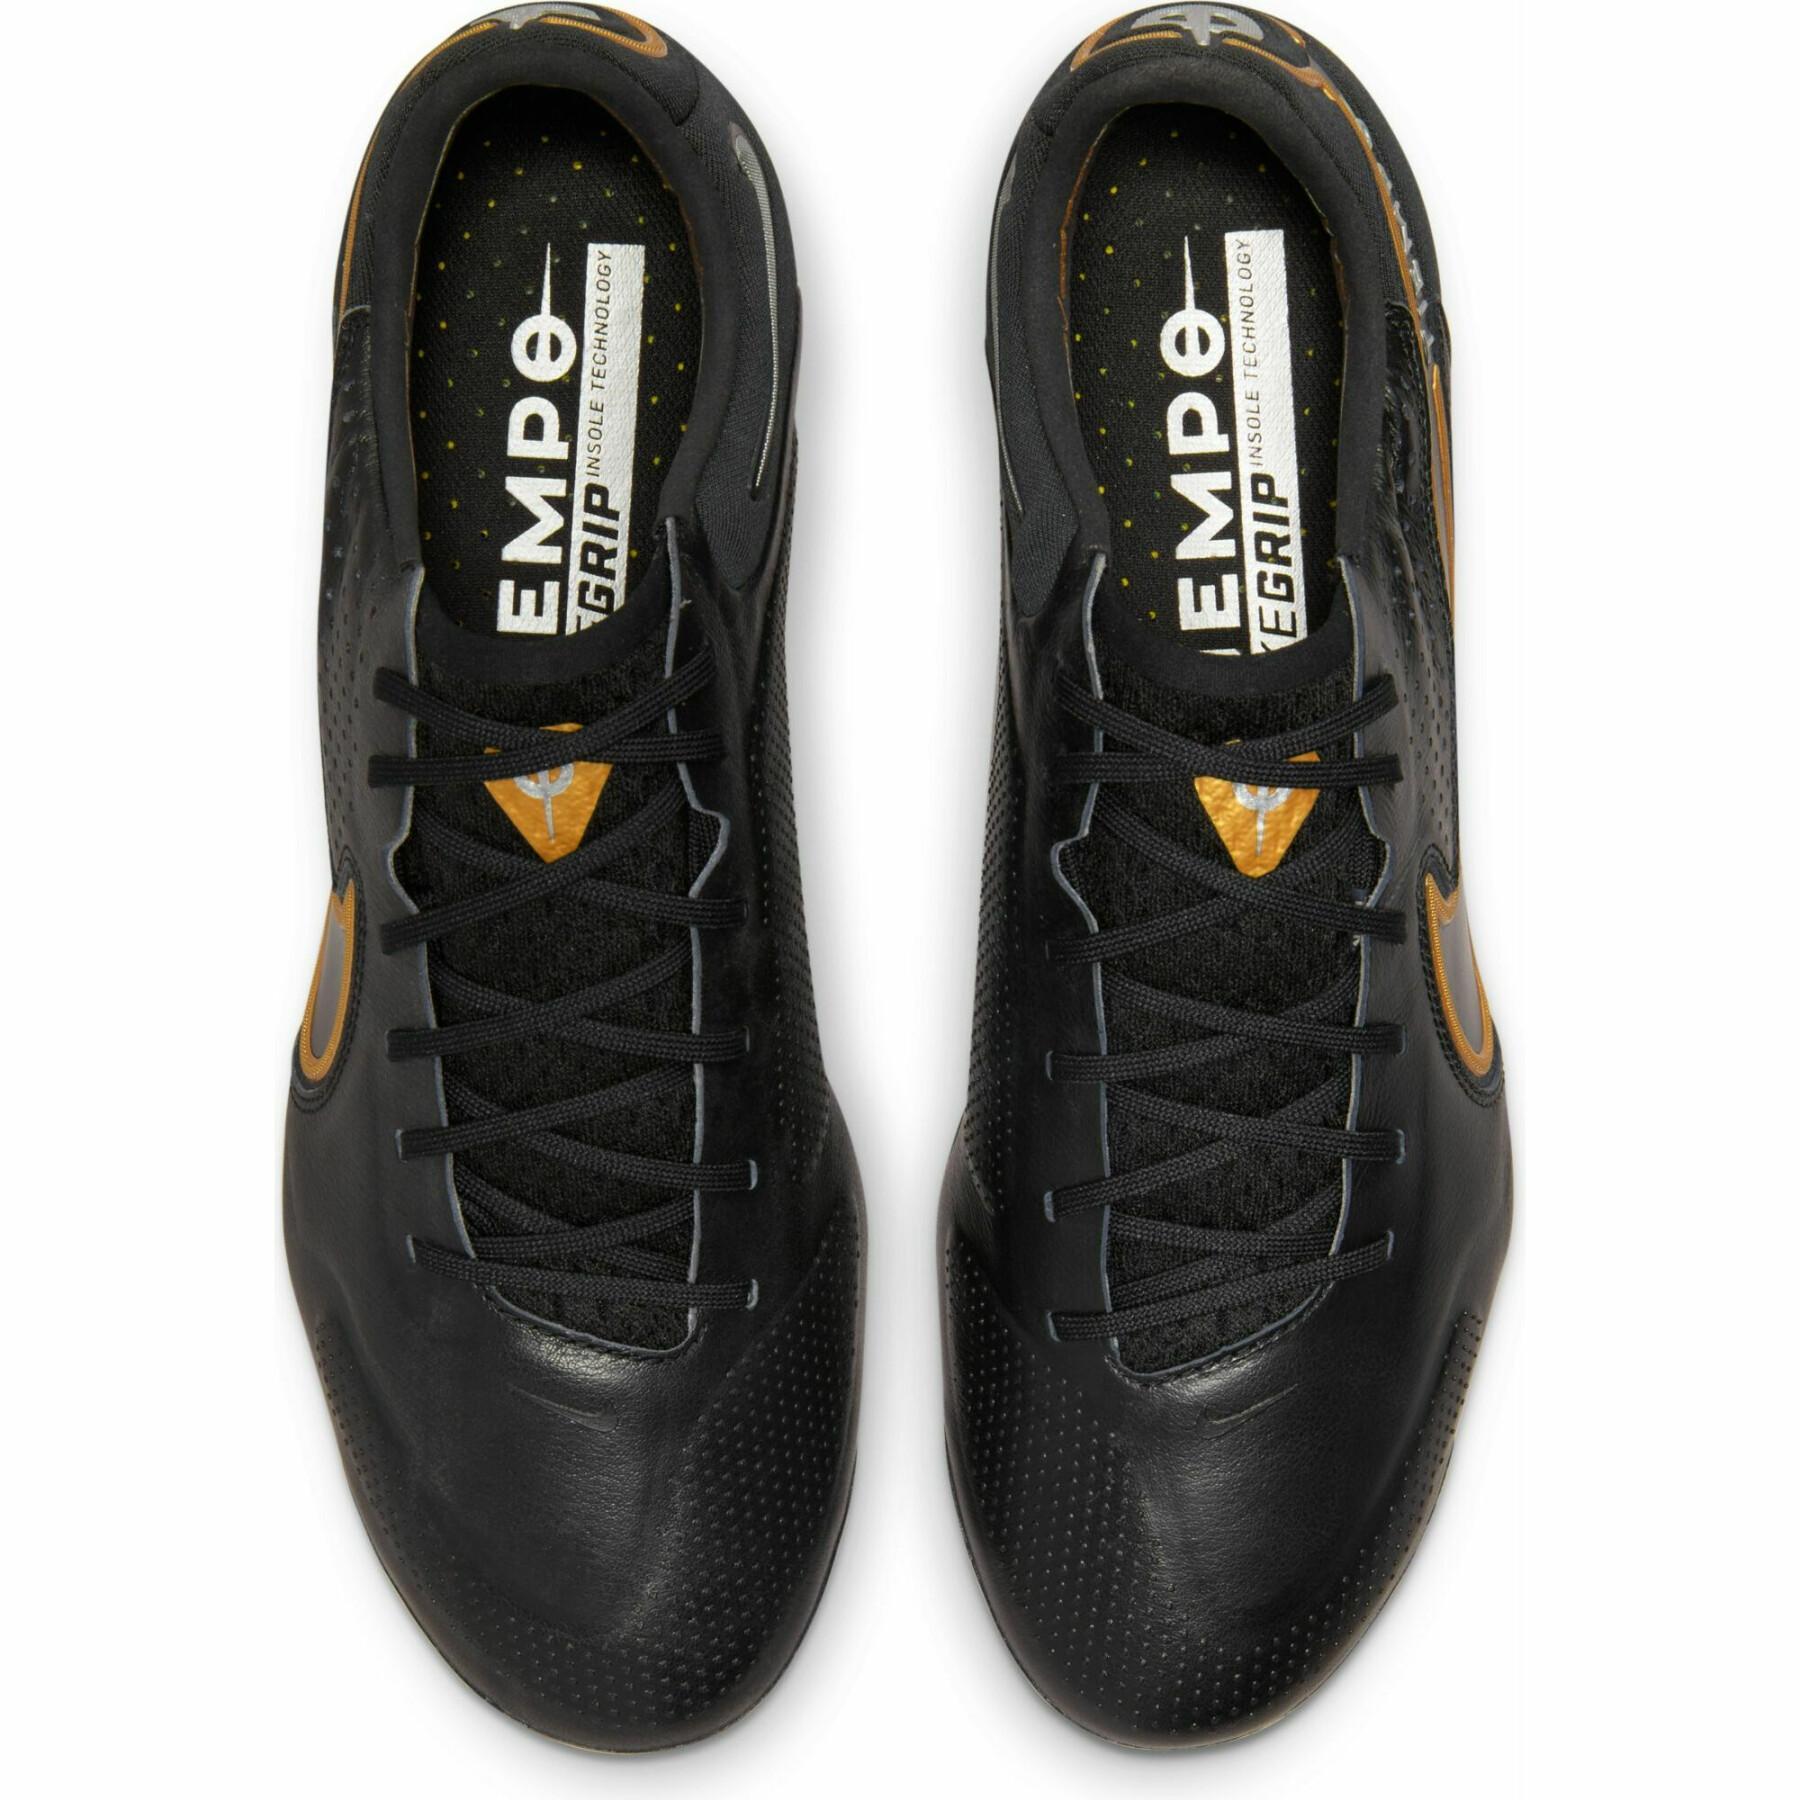 Soccer shoes Nike Tiempo Legend 9 Élite FG